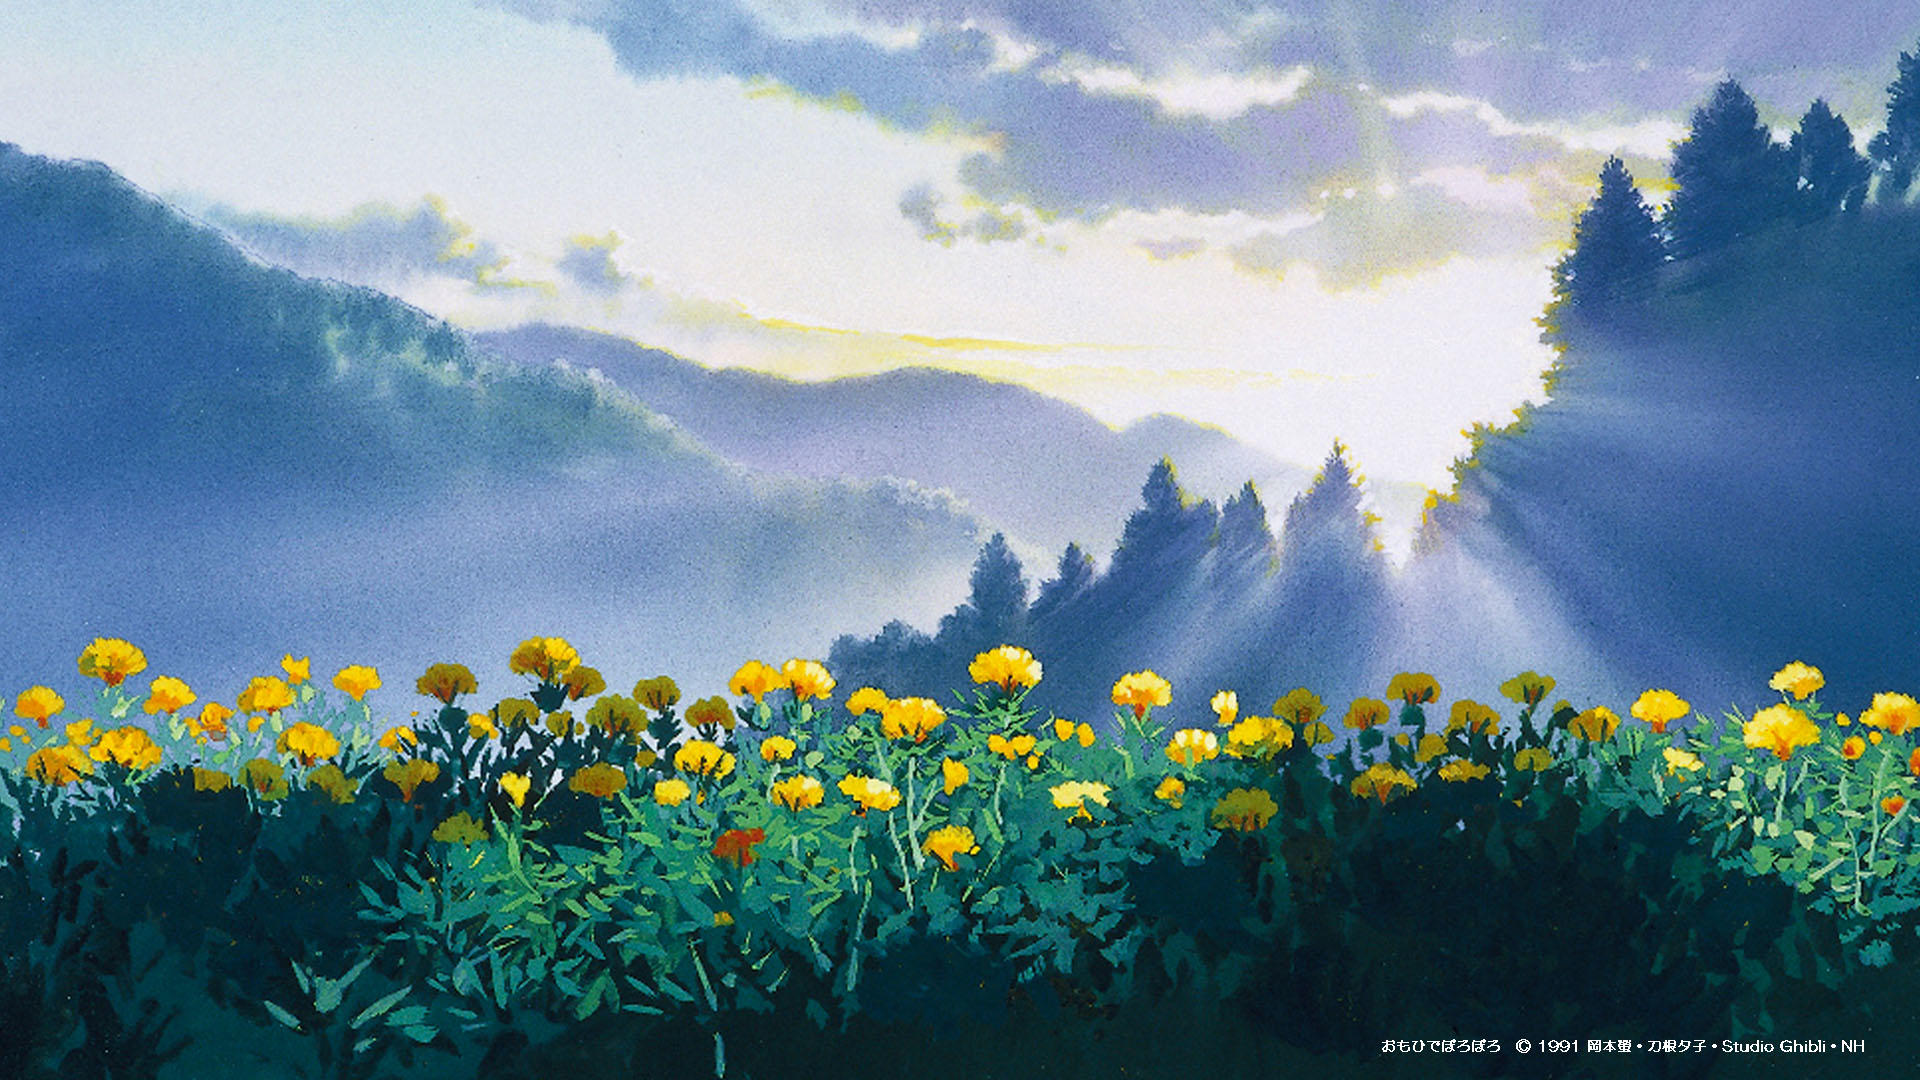 Studio Ghibli: Nếu bạn là một fan của Studio Ghibli, thì bạn không nên bỏ qua những hình ảnh tuyệt đẹp liên quan đến công ty nổi tiếng này tại đây. Bộ sưu tập của chúng tôi bao gồm những hình ảnh phong phú, đầy màu sắc và sống động, chắc chắn sẽ làm cho bạn phấn khích và thích thú.